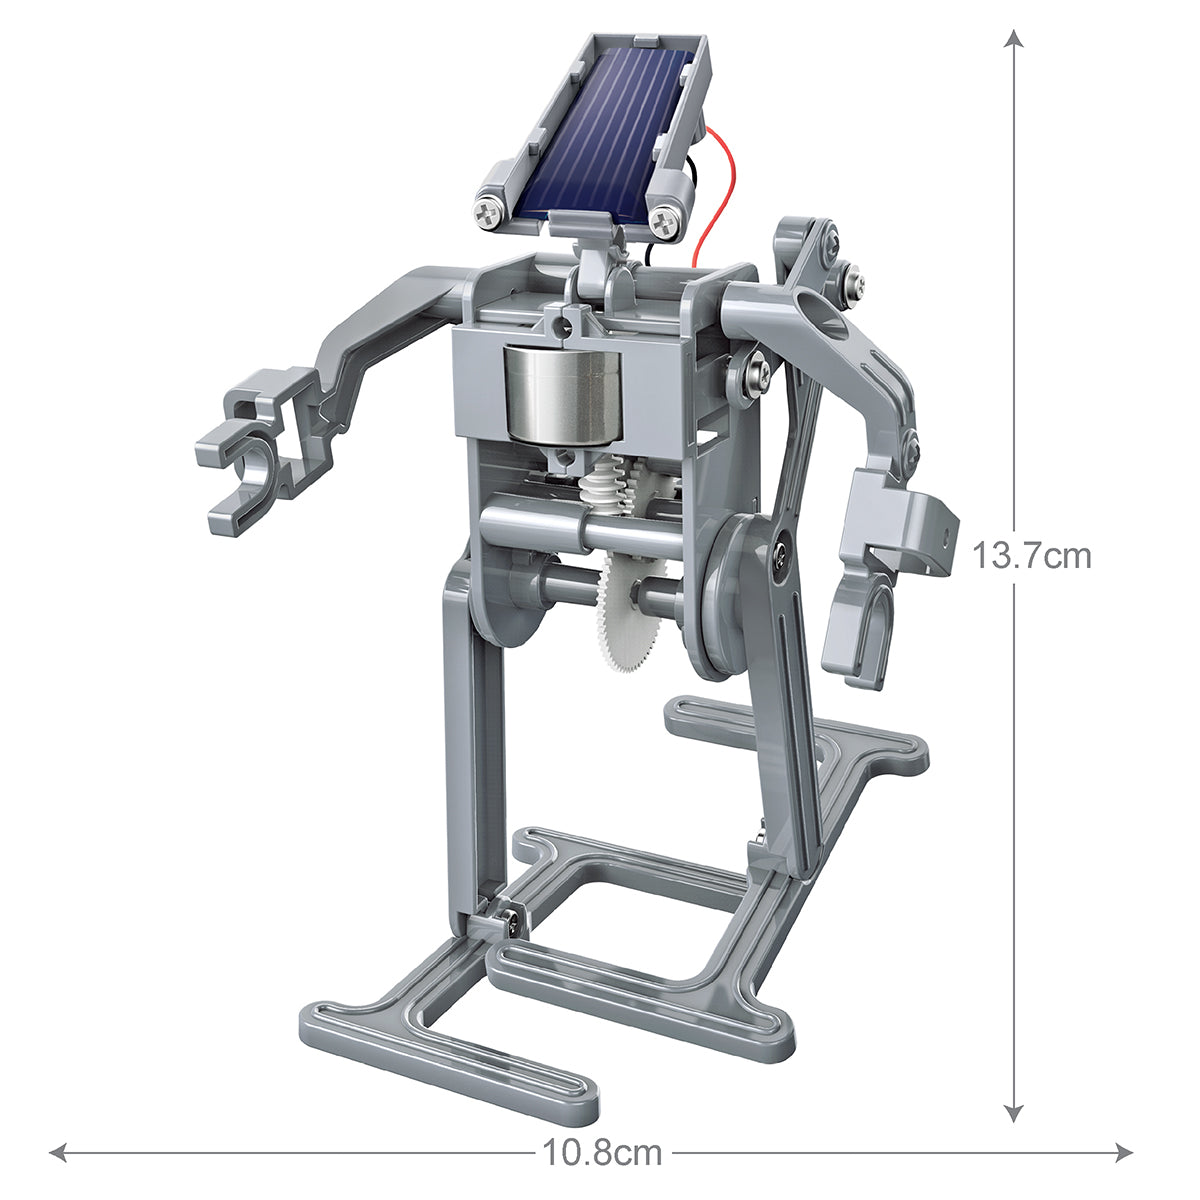 Green Science: Solar Robot